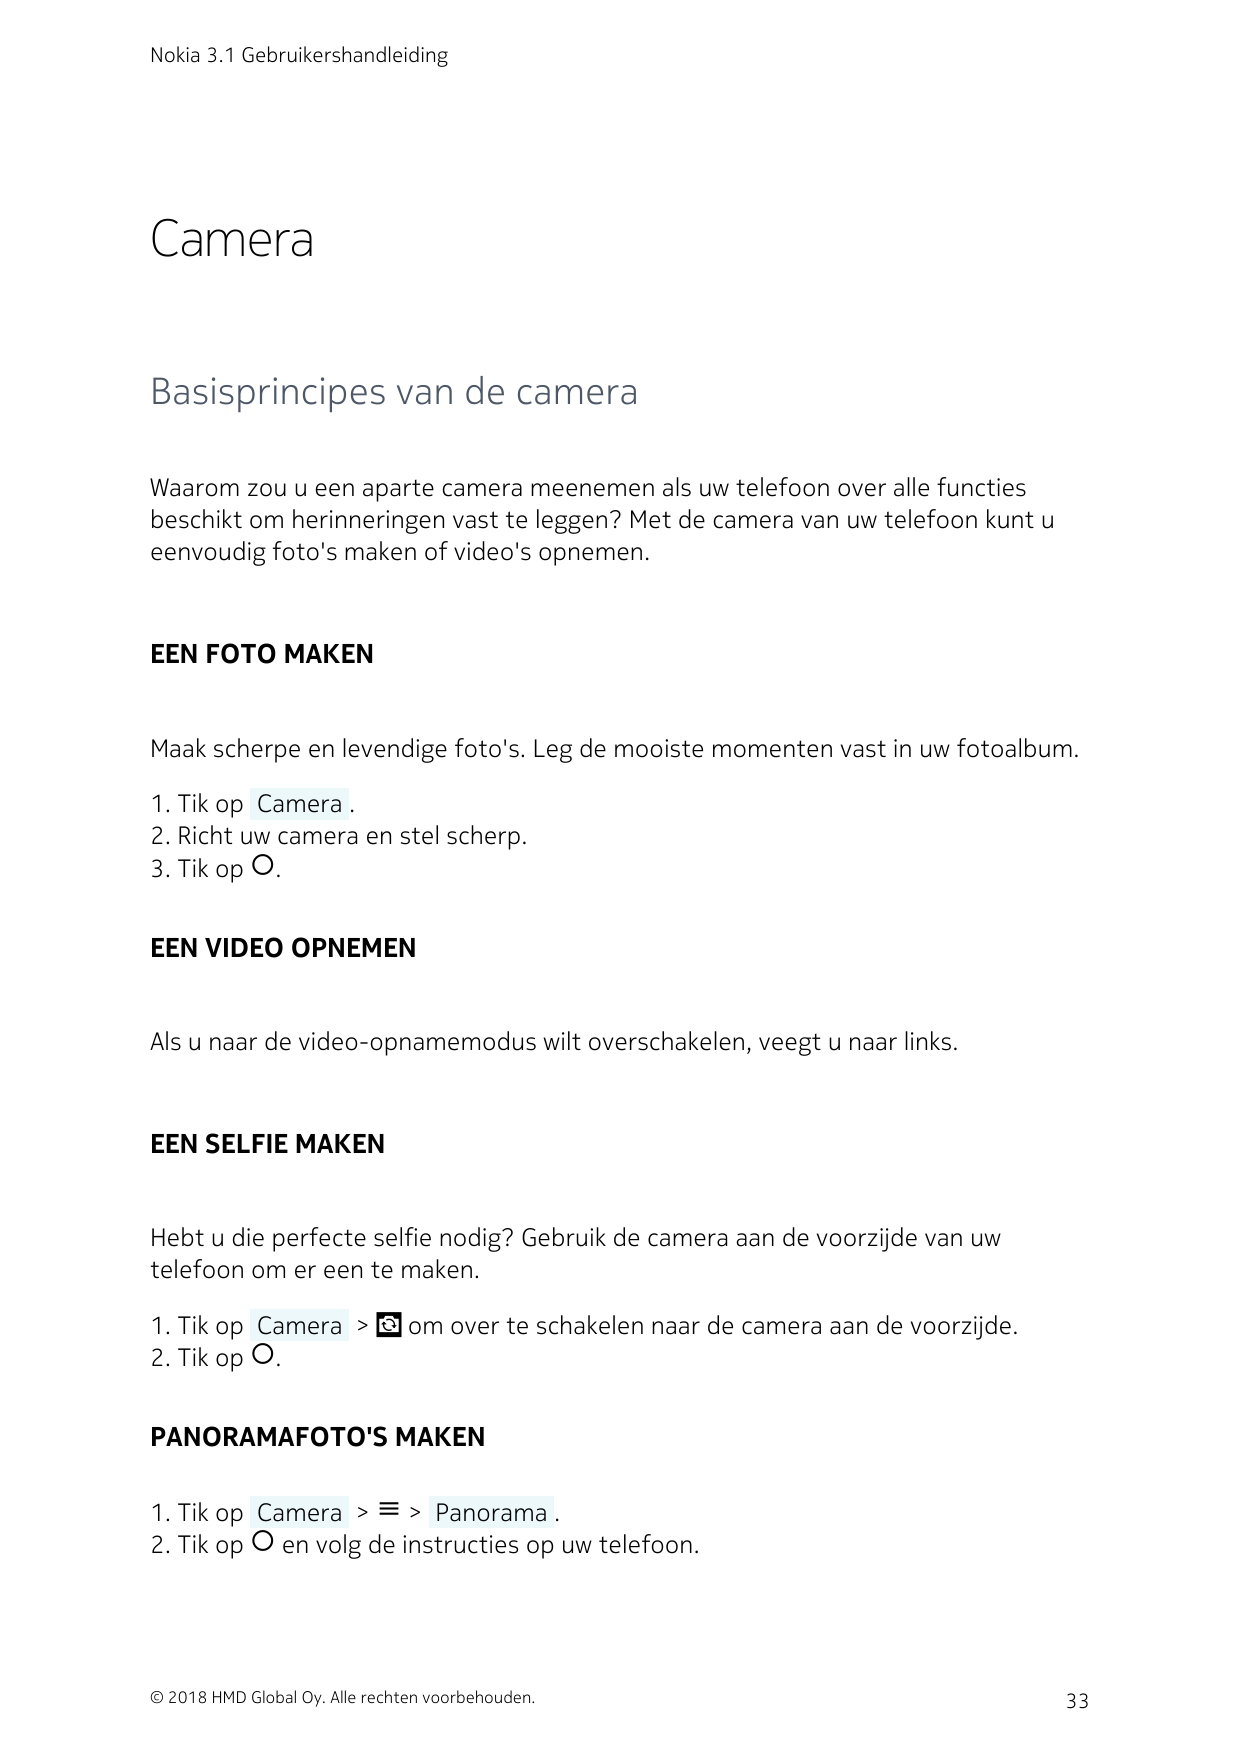 Nokia 3.1 GebruikershandleidingCameraBasisprincipes van de cameraWaarom zou u een aparte camera meenemen als uw telefoon over al